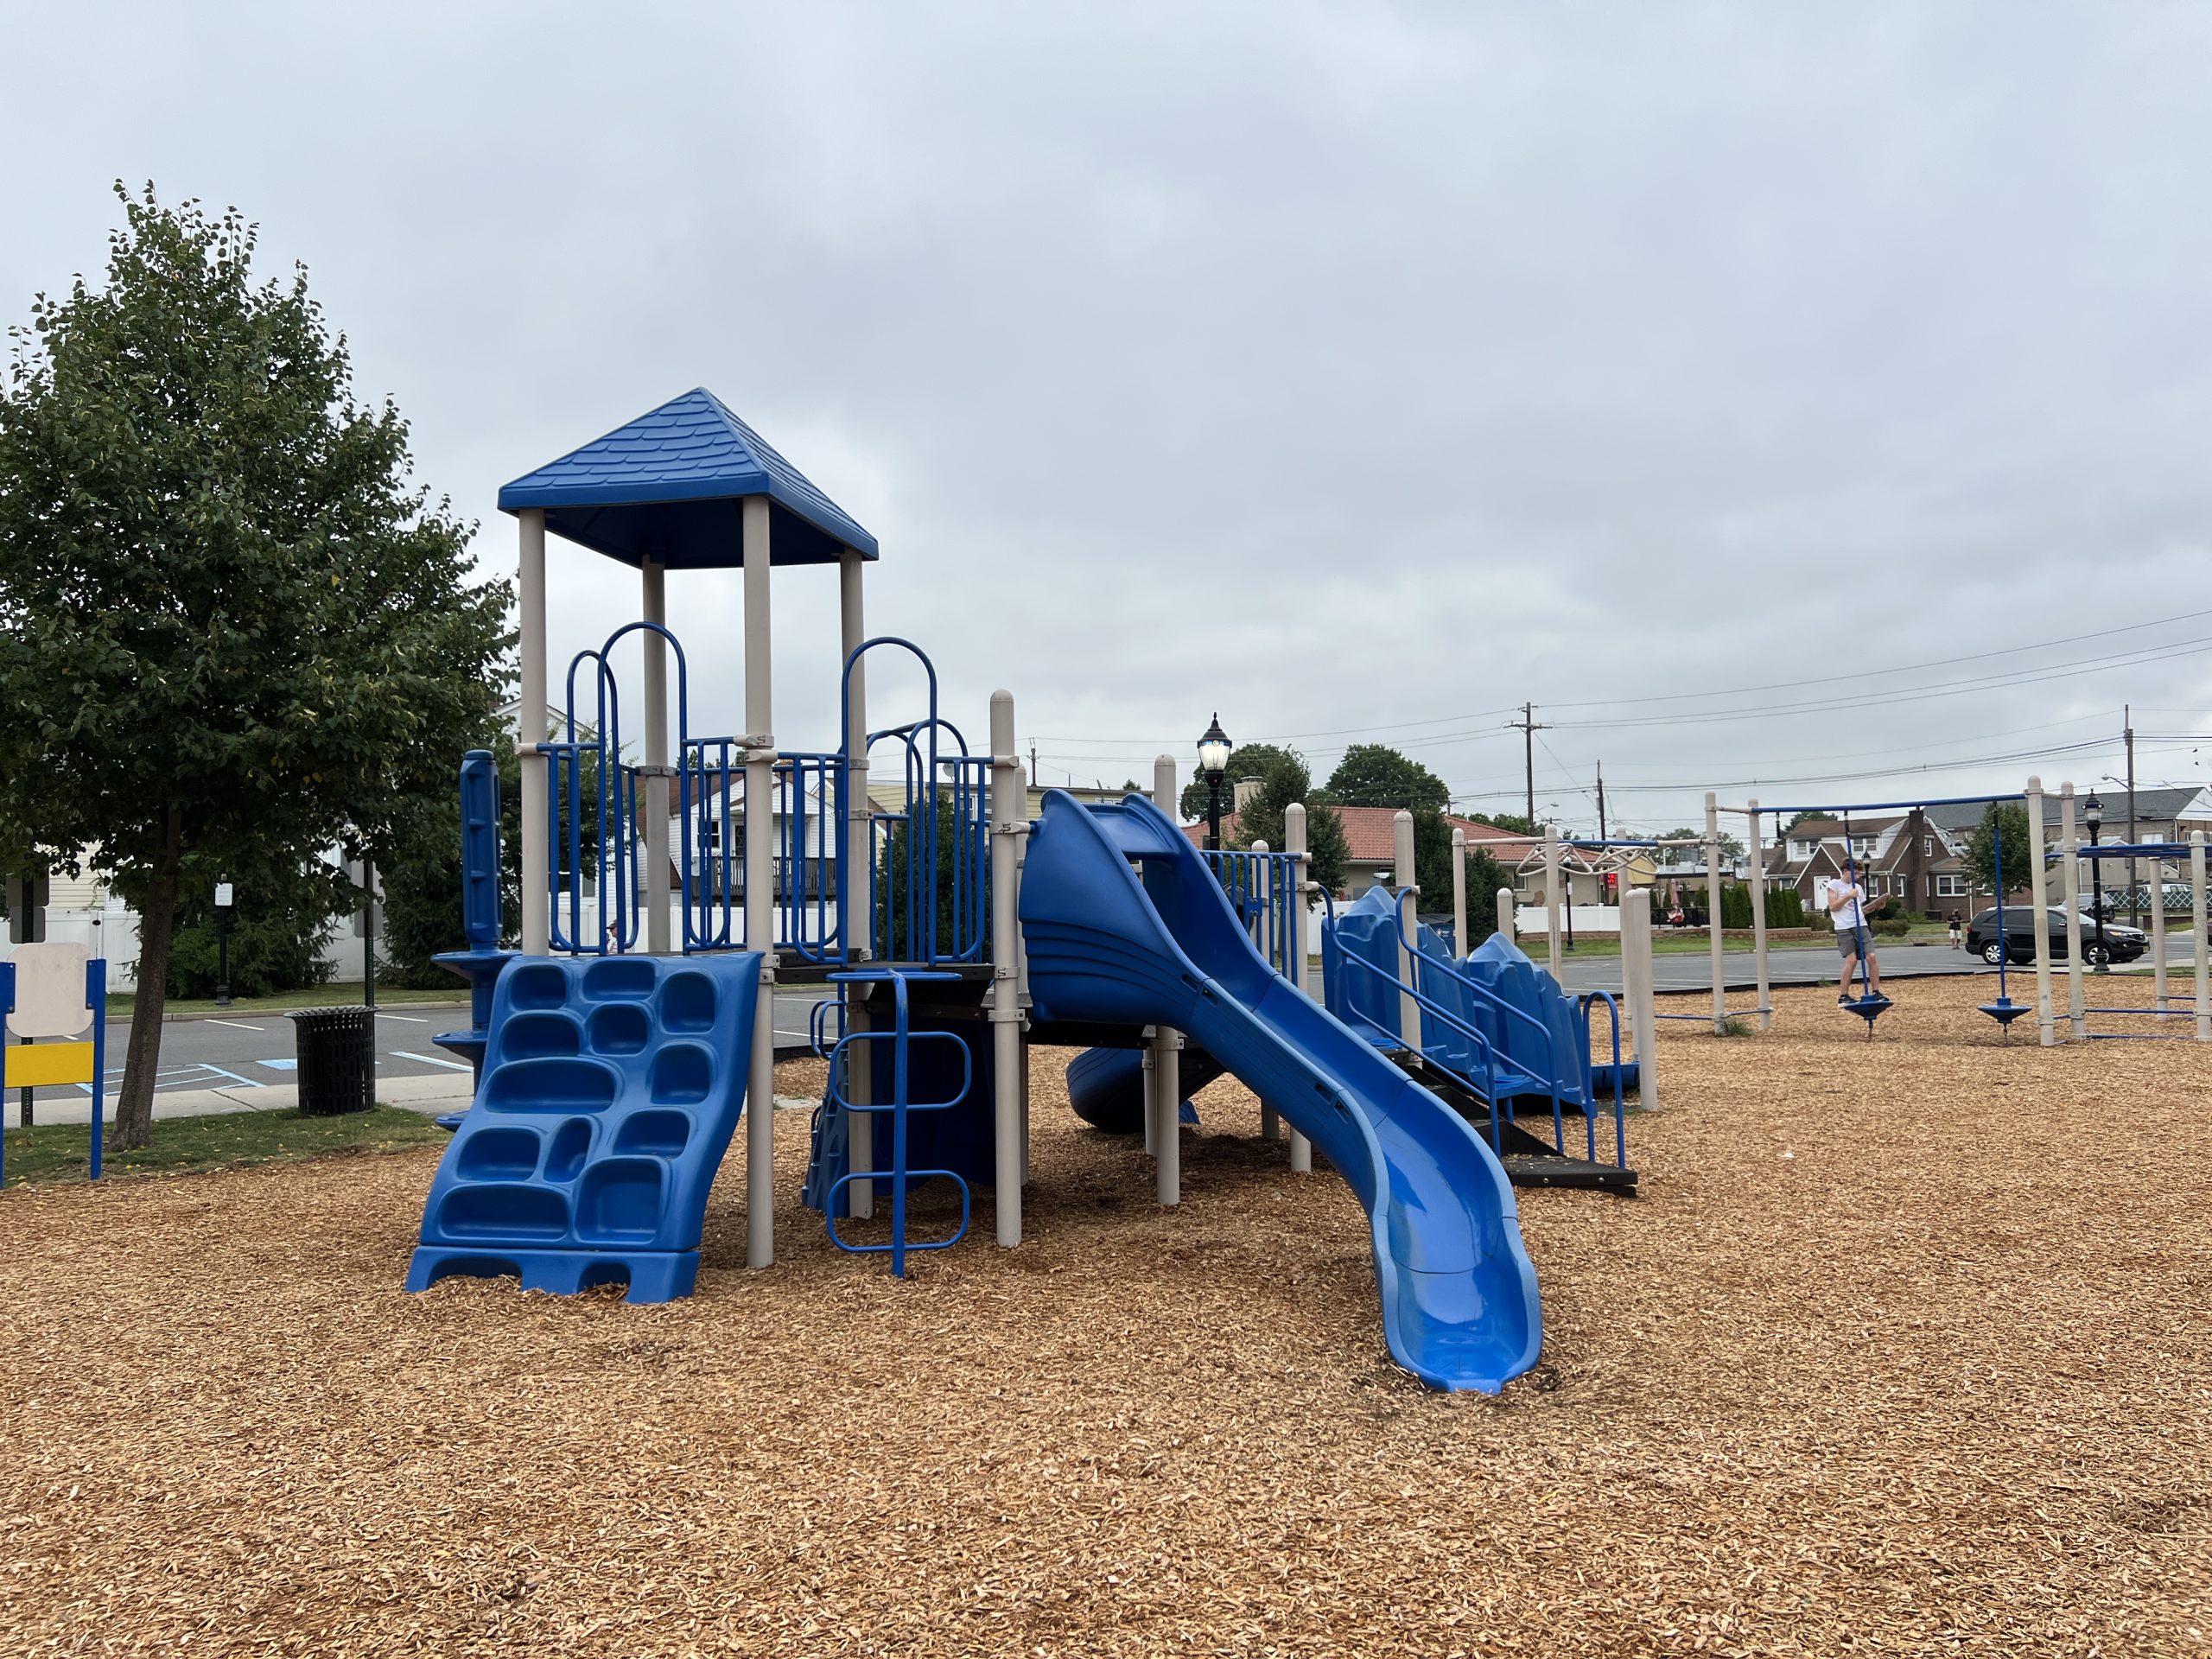 Preschool Playground spraypark side at Carteret Park in Carteret NJ